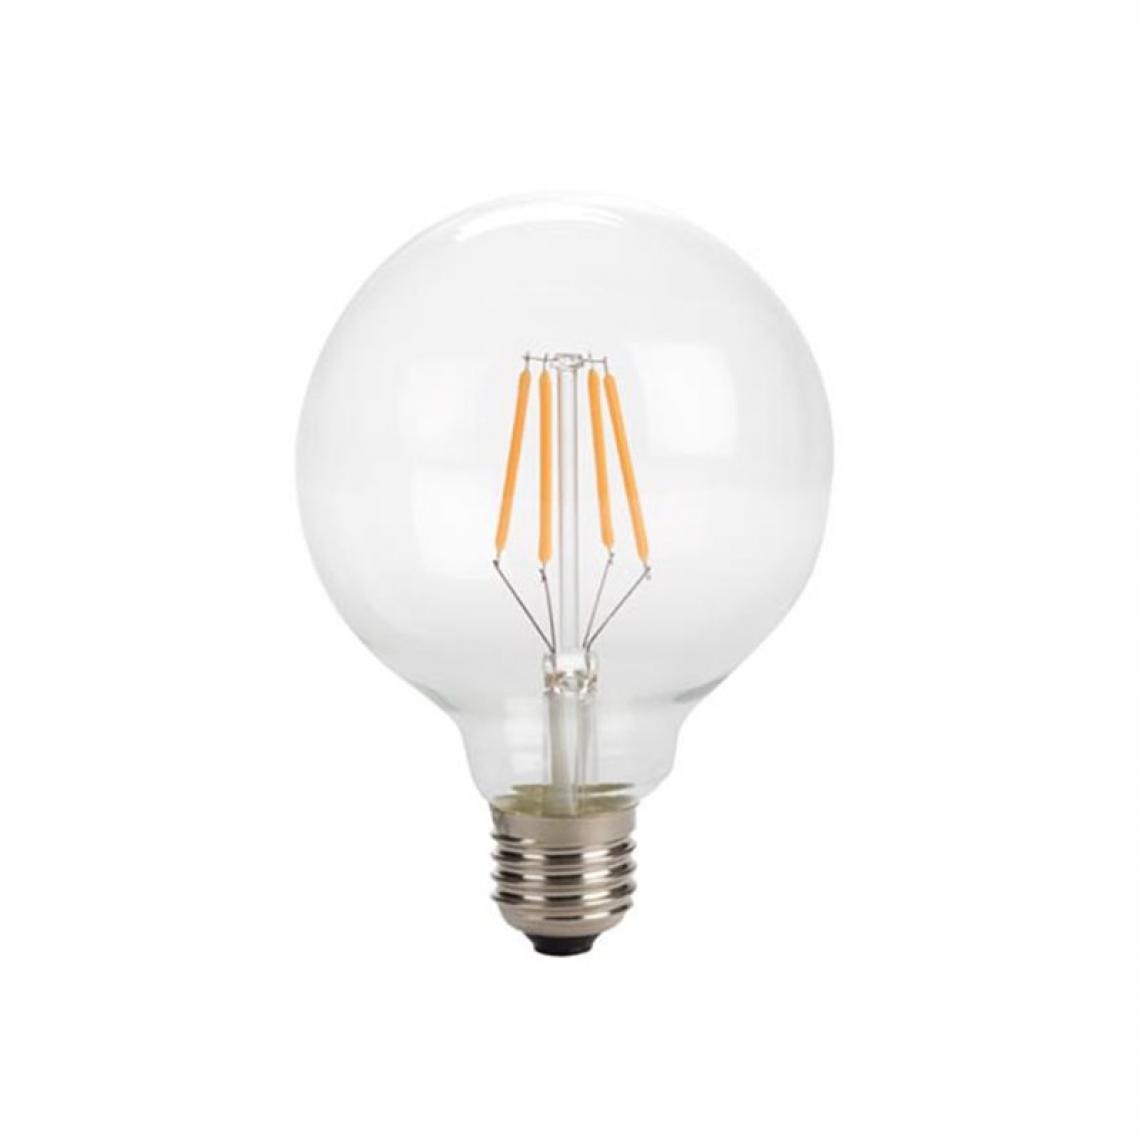 Perel - Ampoule À Filament Led - Style Rétro - G95 - 4 W - E27 - Blanc Chaud Intense - Ampoules LED